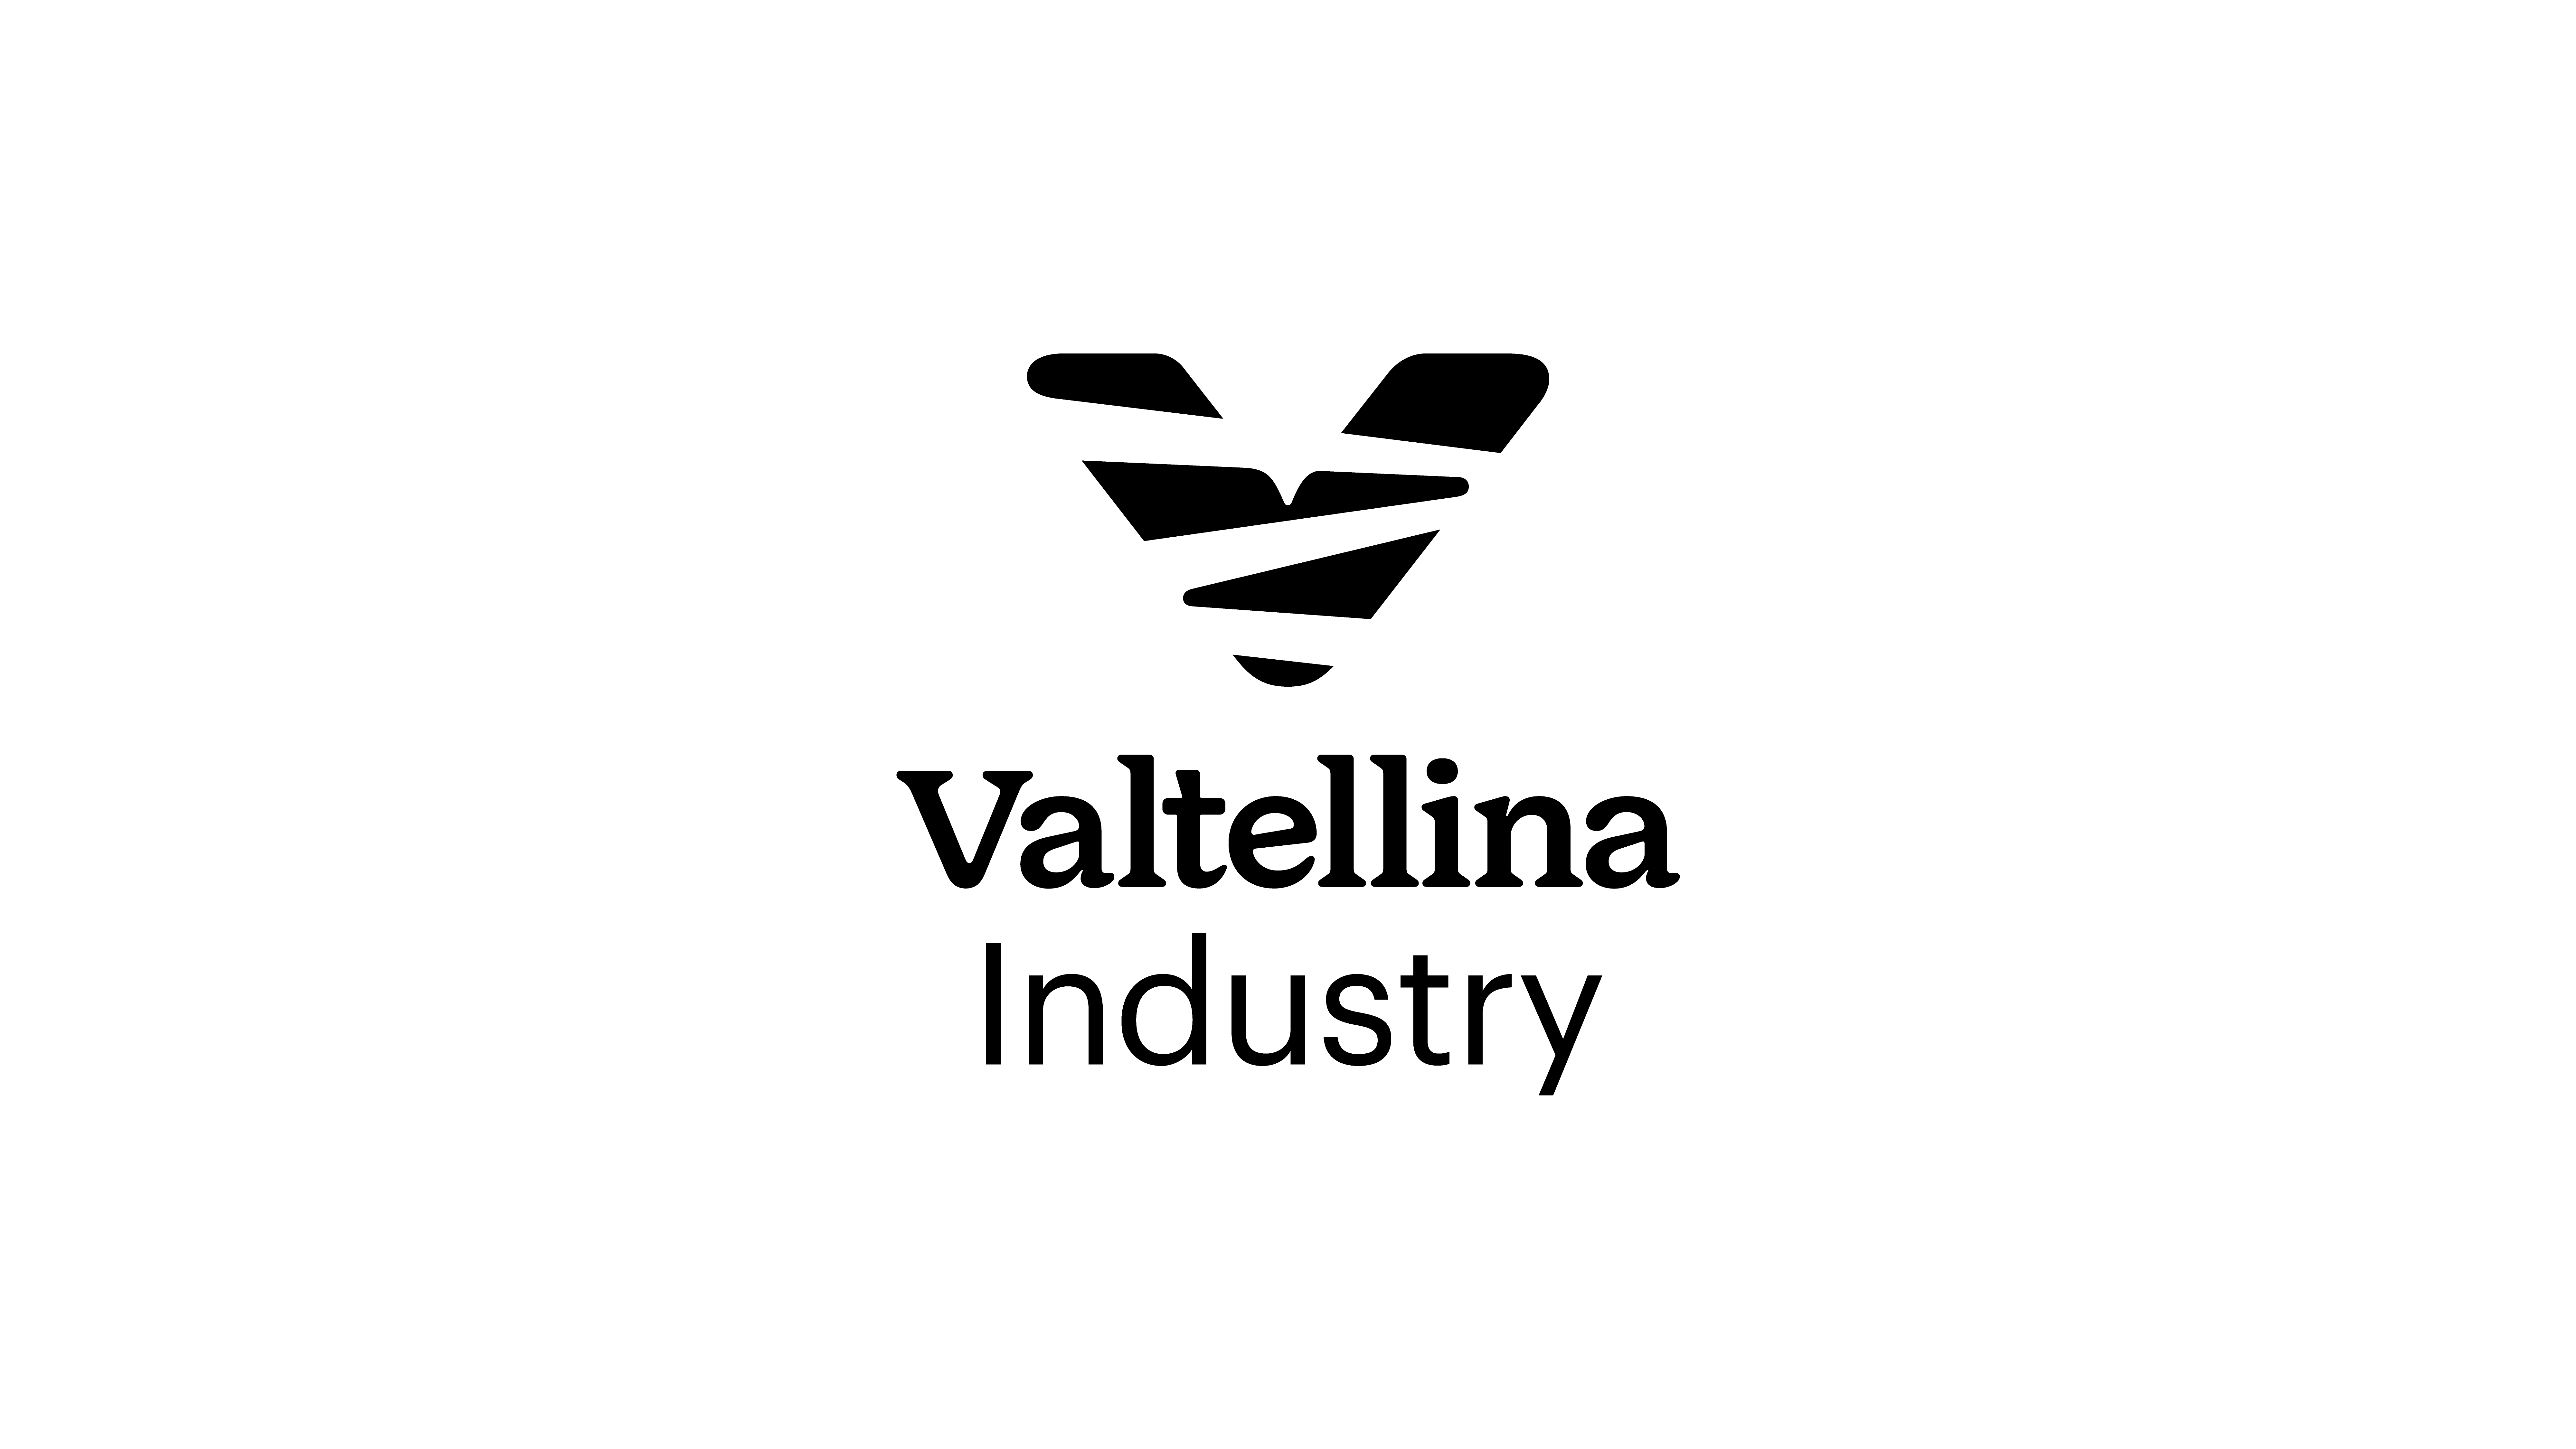 Valtellina Industry trademark